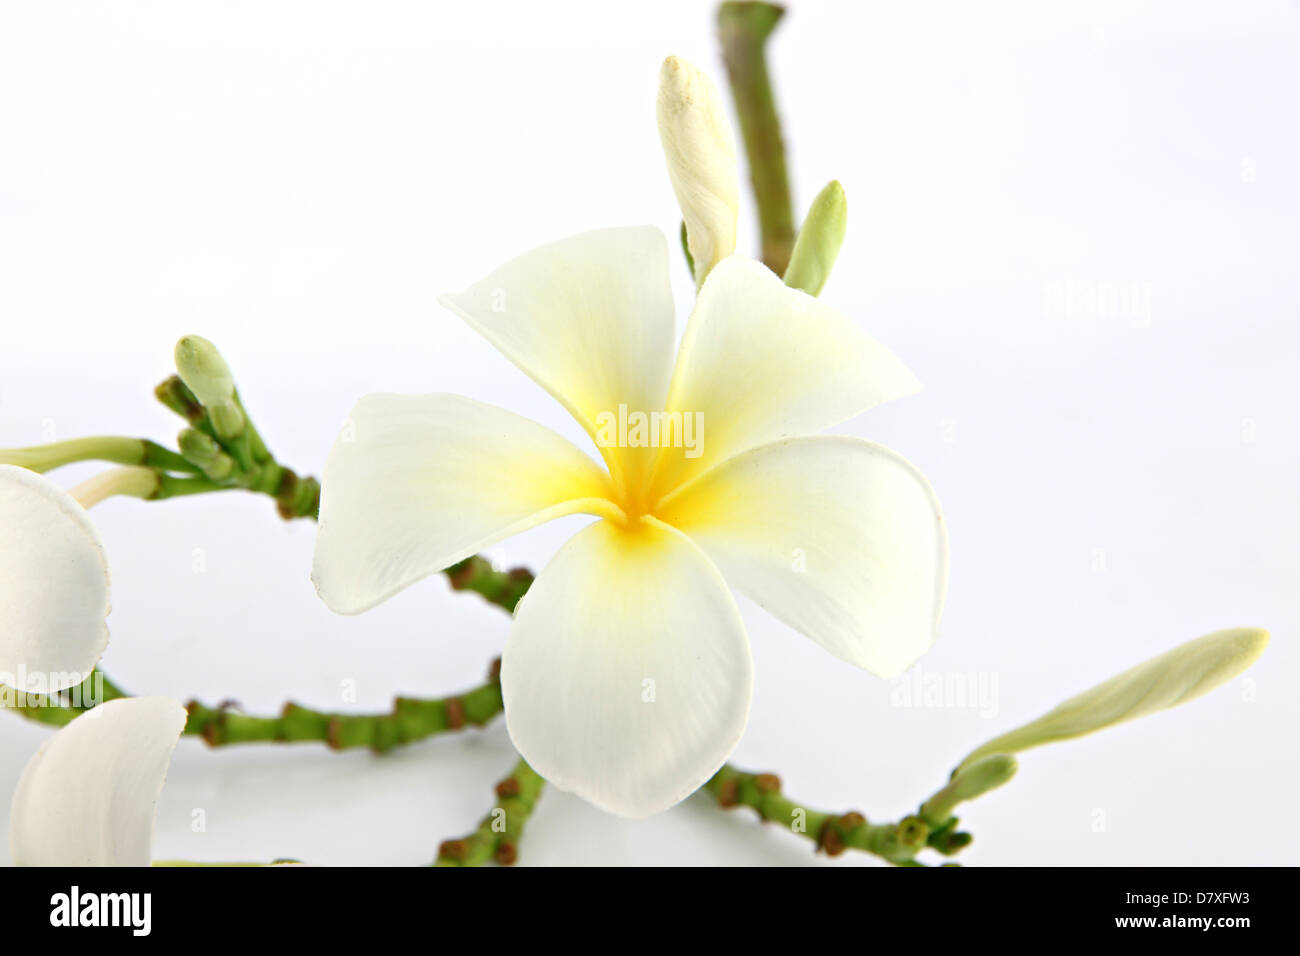 Many white frangipani flowers on the white background. Stock Photo